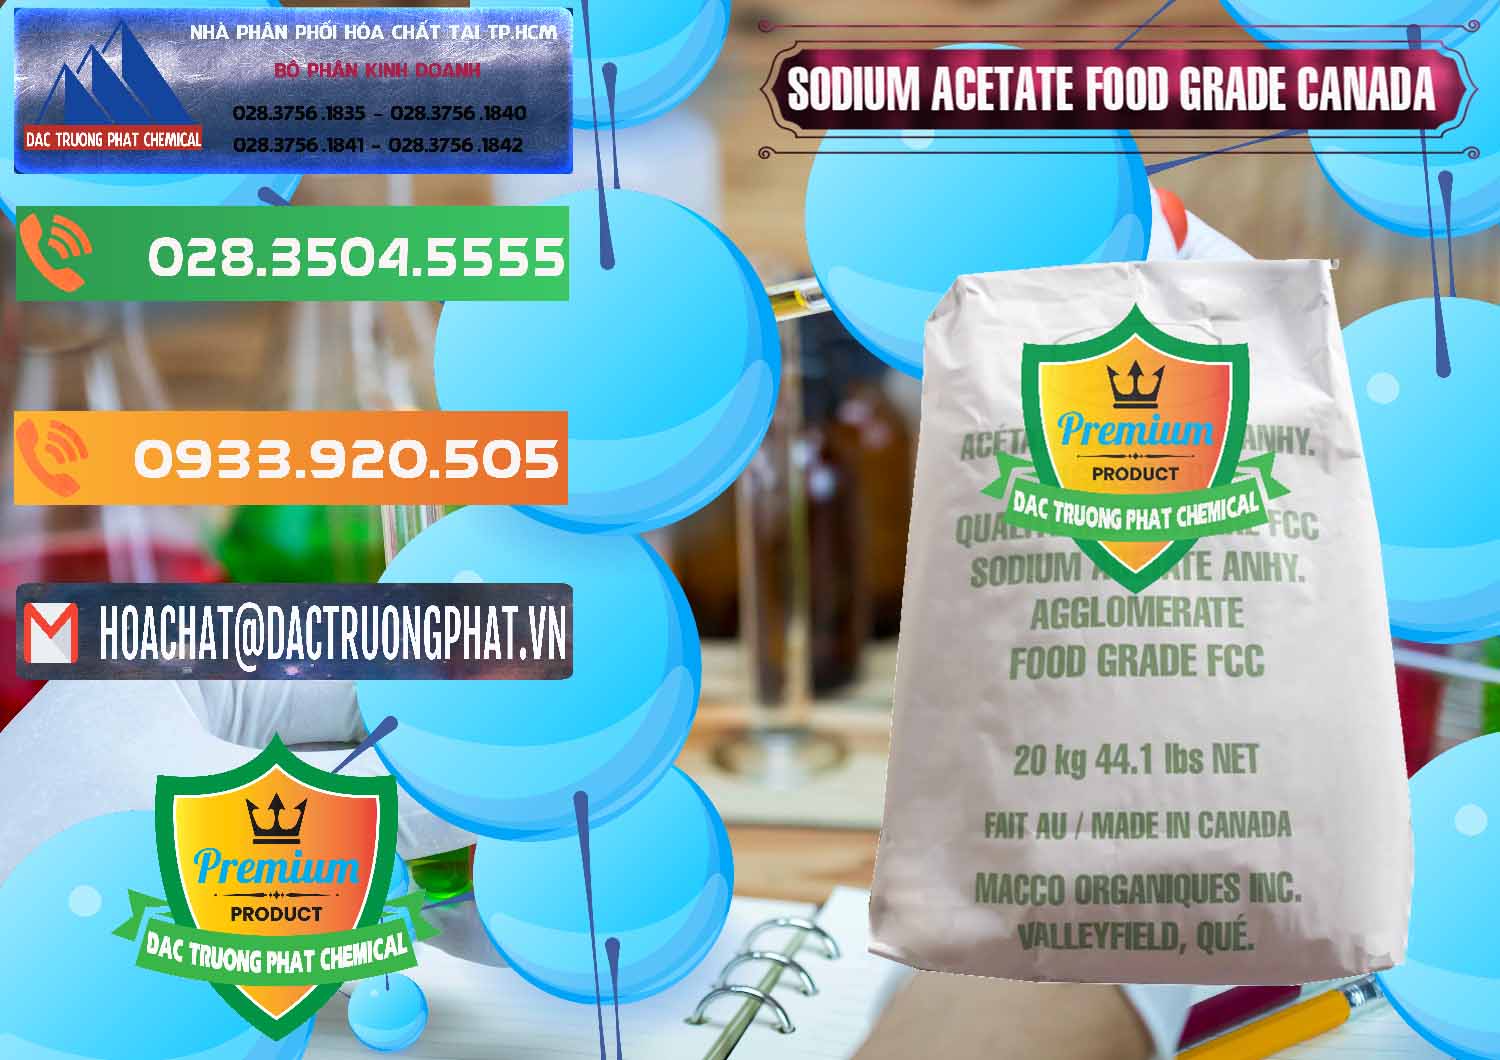 Công ty bán _ cung ứng Sodium Acetate - Natri Acetate Food Grade Canada - 0282 - Nơi phân phối và cung cấp hóa chất tại TP.HCM - hoachatxulynuoc.com.vn